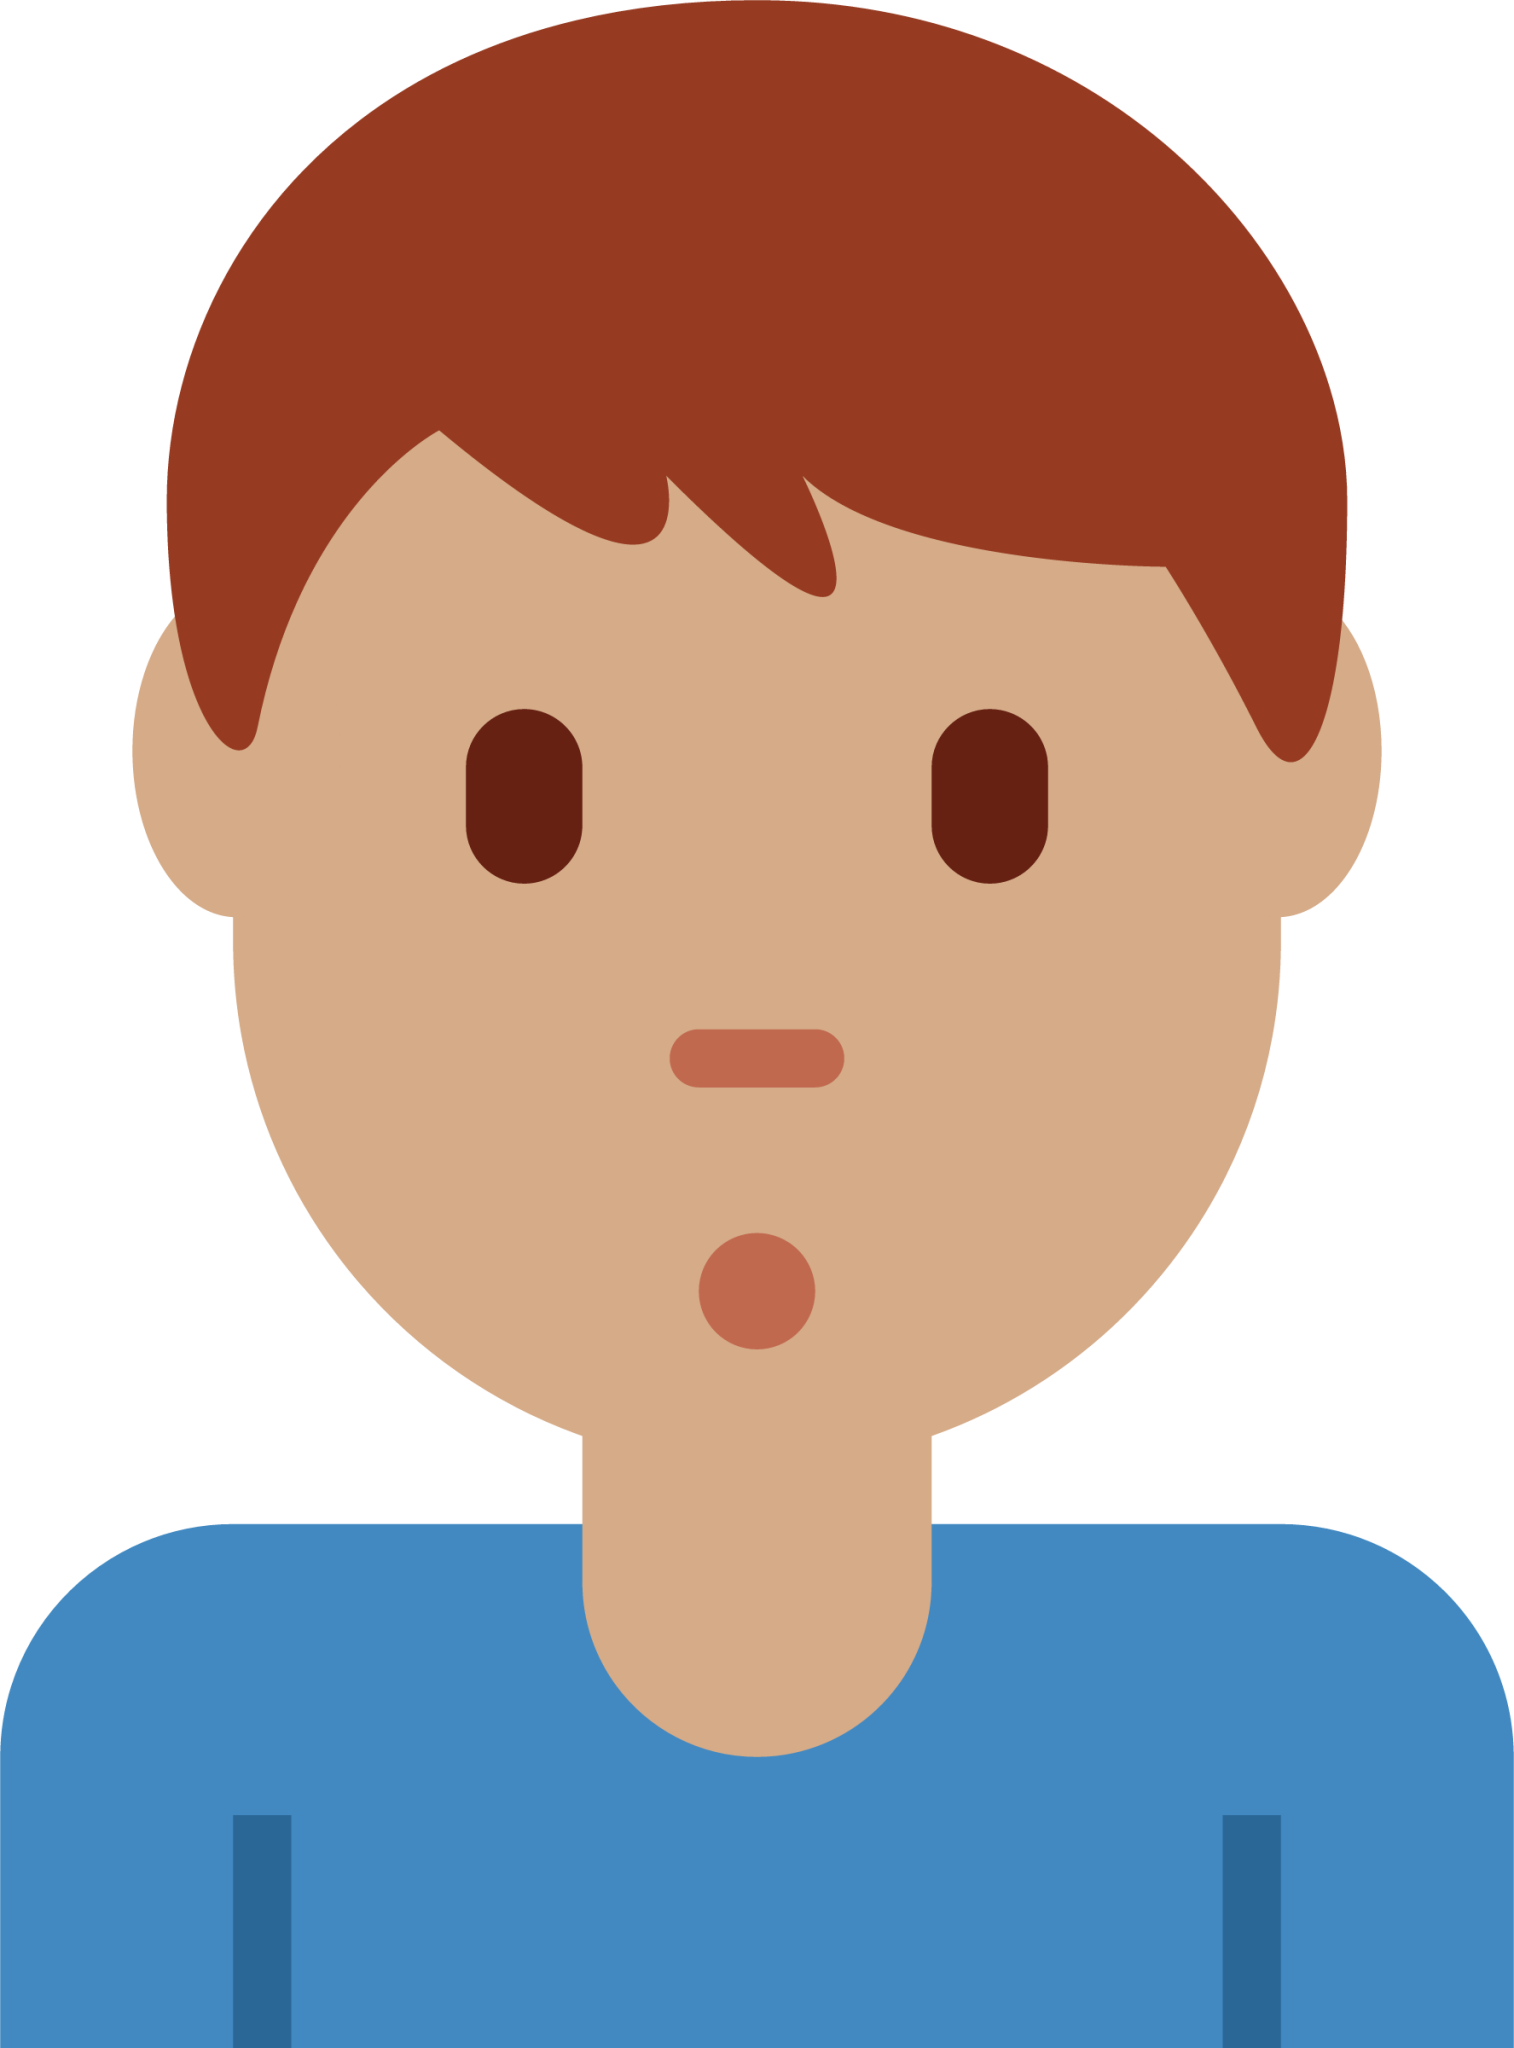 man pouting: medium skin tone emoji